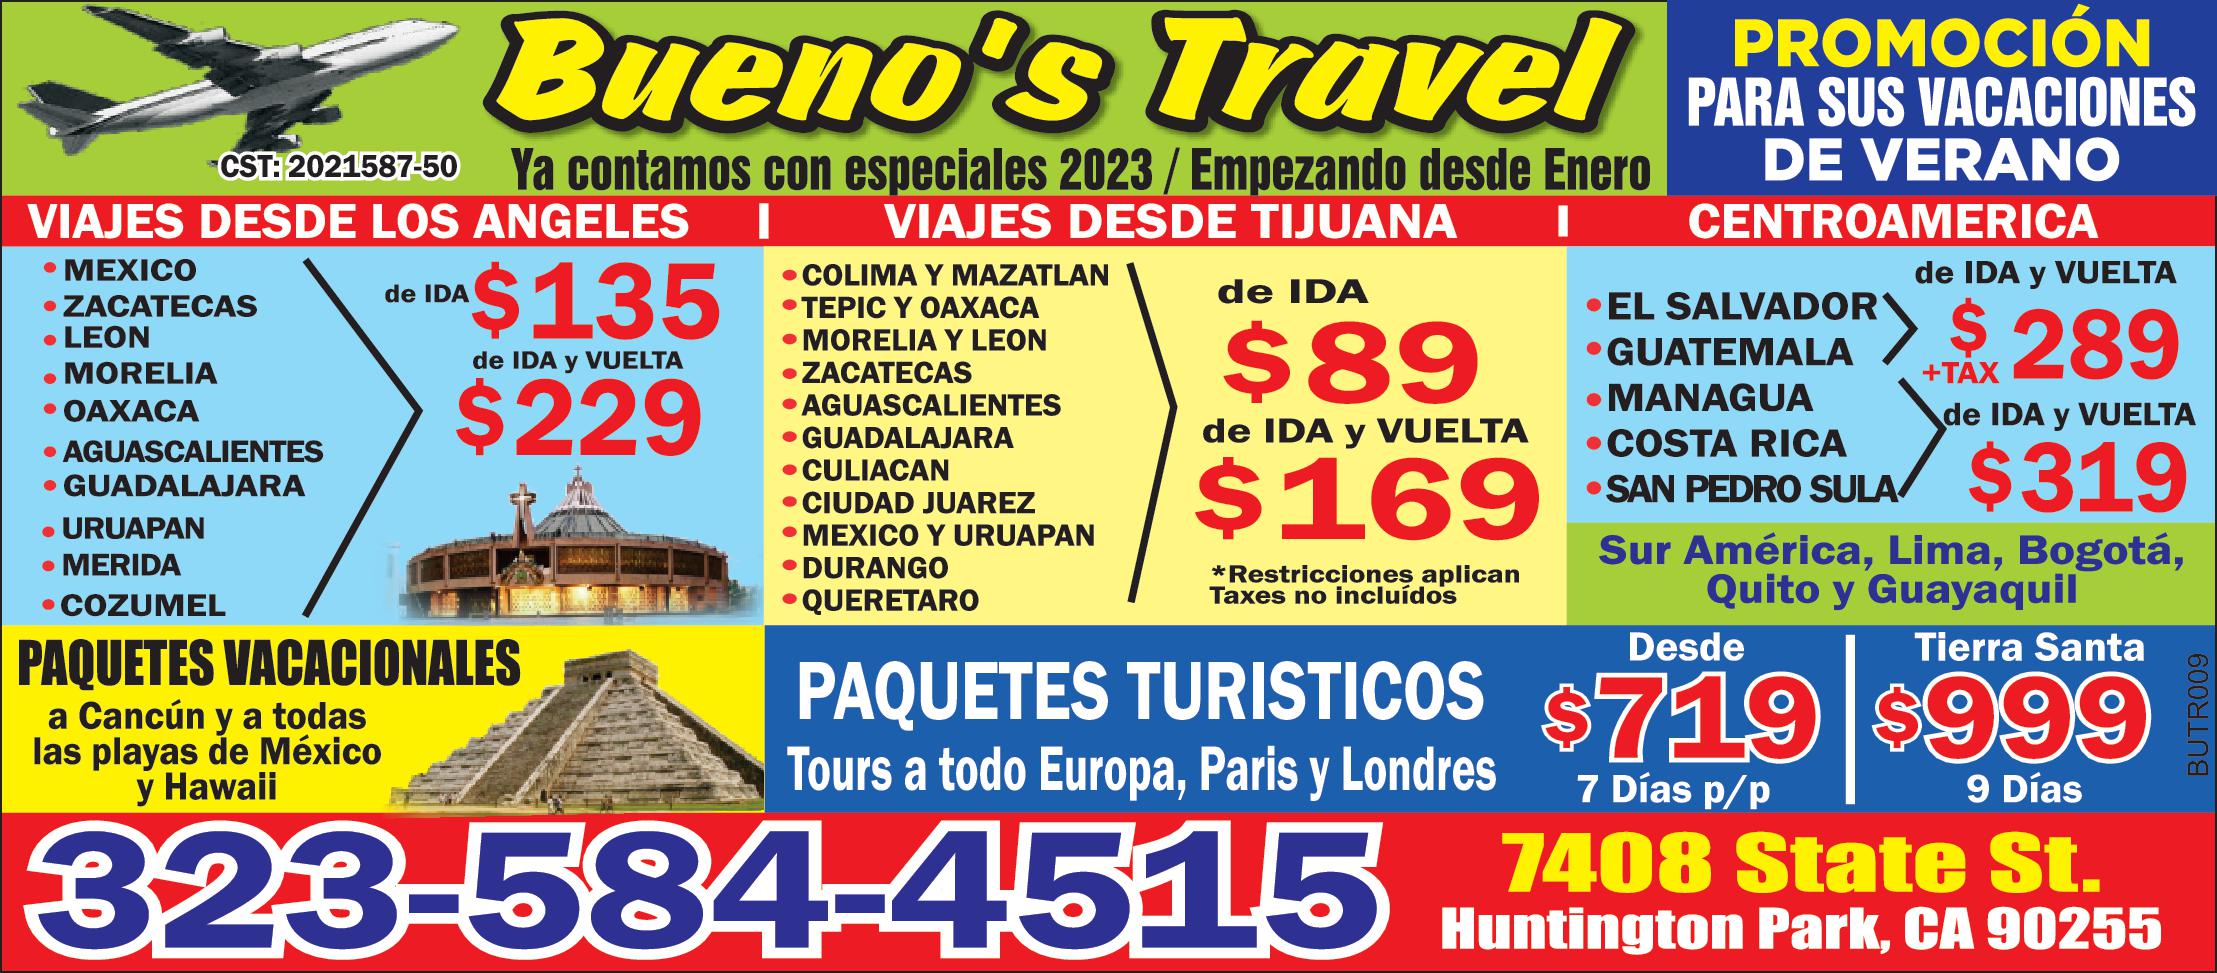 Bueno's Travel PROMOCION PARA SUS VACACIONES ya contamos con especiales 2023/ Empezando desde Enero VIAJES DE LOS ANGELES *MEXICO *ZACATECAS *LEON *MORELIA* OAXACA*AGUASCALIENTES* GUADALAJARA * URUAPAN * MERIDA * COZUMEL DE IDA $135 DE IDA Y VUELTA $229 VIAJES DESDE TIJUANA *COLIMA *TEPIC Y OAXACA *MORELIA Y LEON * ZACATECAS * AGUASCALIENTES *GUADALAJARA * CULIACAN *CIUDAD JUAREZ *MEXICO Y URUAPAN * DURANGO * QUERETARO DE IDA $89 DE IDA Y VUELTA $169 CENTROAMERICA *EL SALVADOR * GUATEMALA DE IDA Y VUELTA $289 * MANAGUA * COSTA RICA * SAN PEDRO SULA DE IDA Y VUELTA $319 Sur America, Lima, Bogota, Quito Y Guataquil PAQUETES VACACIONALES a Cancun y a todas las playas de Mexico y Hawaii PAQUETES TURISTICOS Tour a todo Europa, Paris y Londres Desde $719 & Dias p/p Tierra Santa $999 9 Dias 323-584-4515 7408 State St Huntington Park, CA 90255